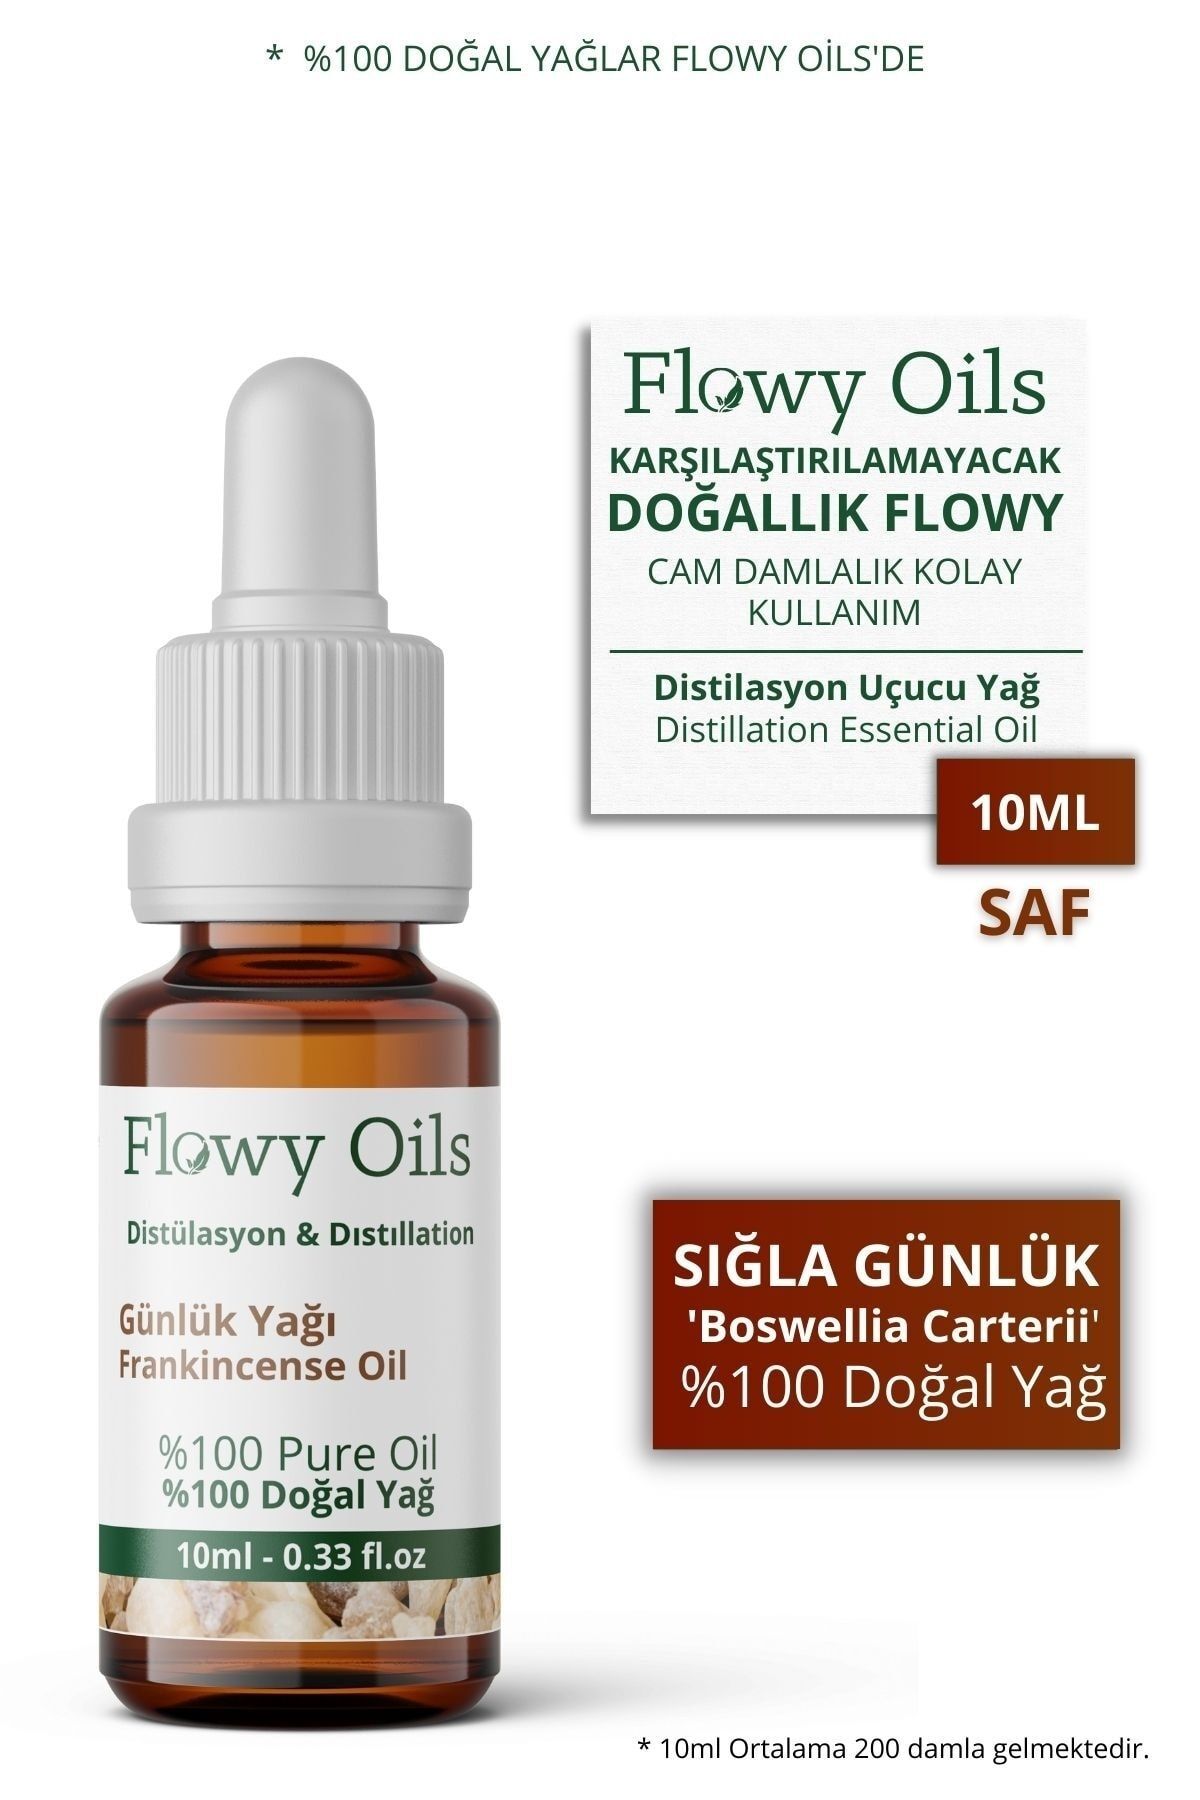 Flowy Oils Sığla Günlük Yağı %100 Doğal Bitkisel Uçucu Yağ Akgünlük Yağı Frankincense Oil 10ml